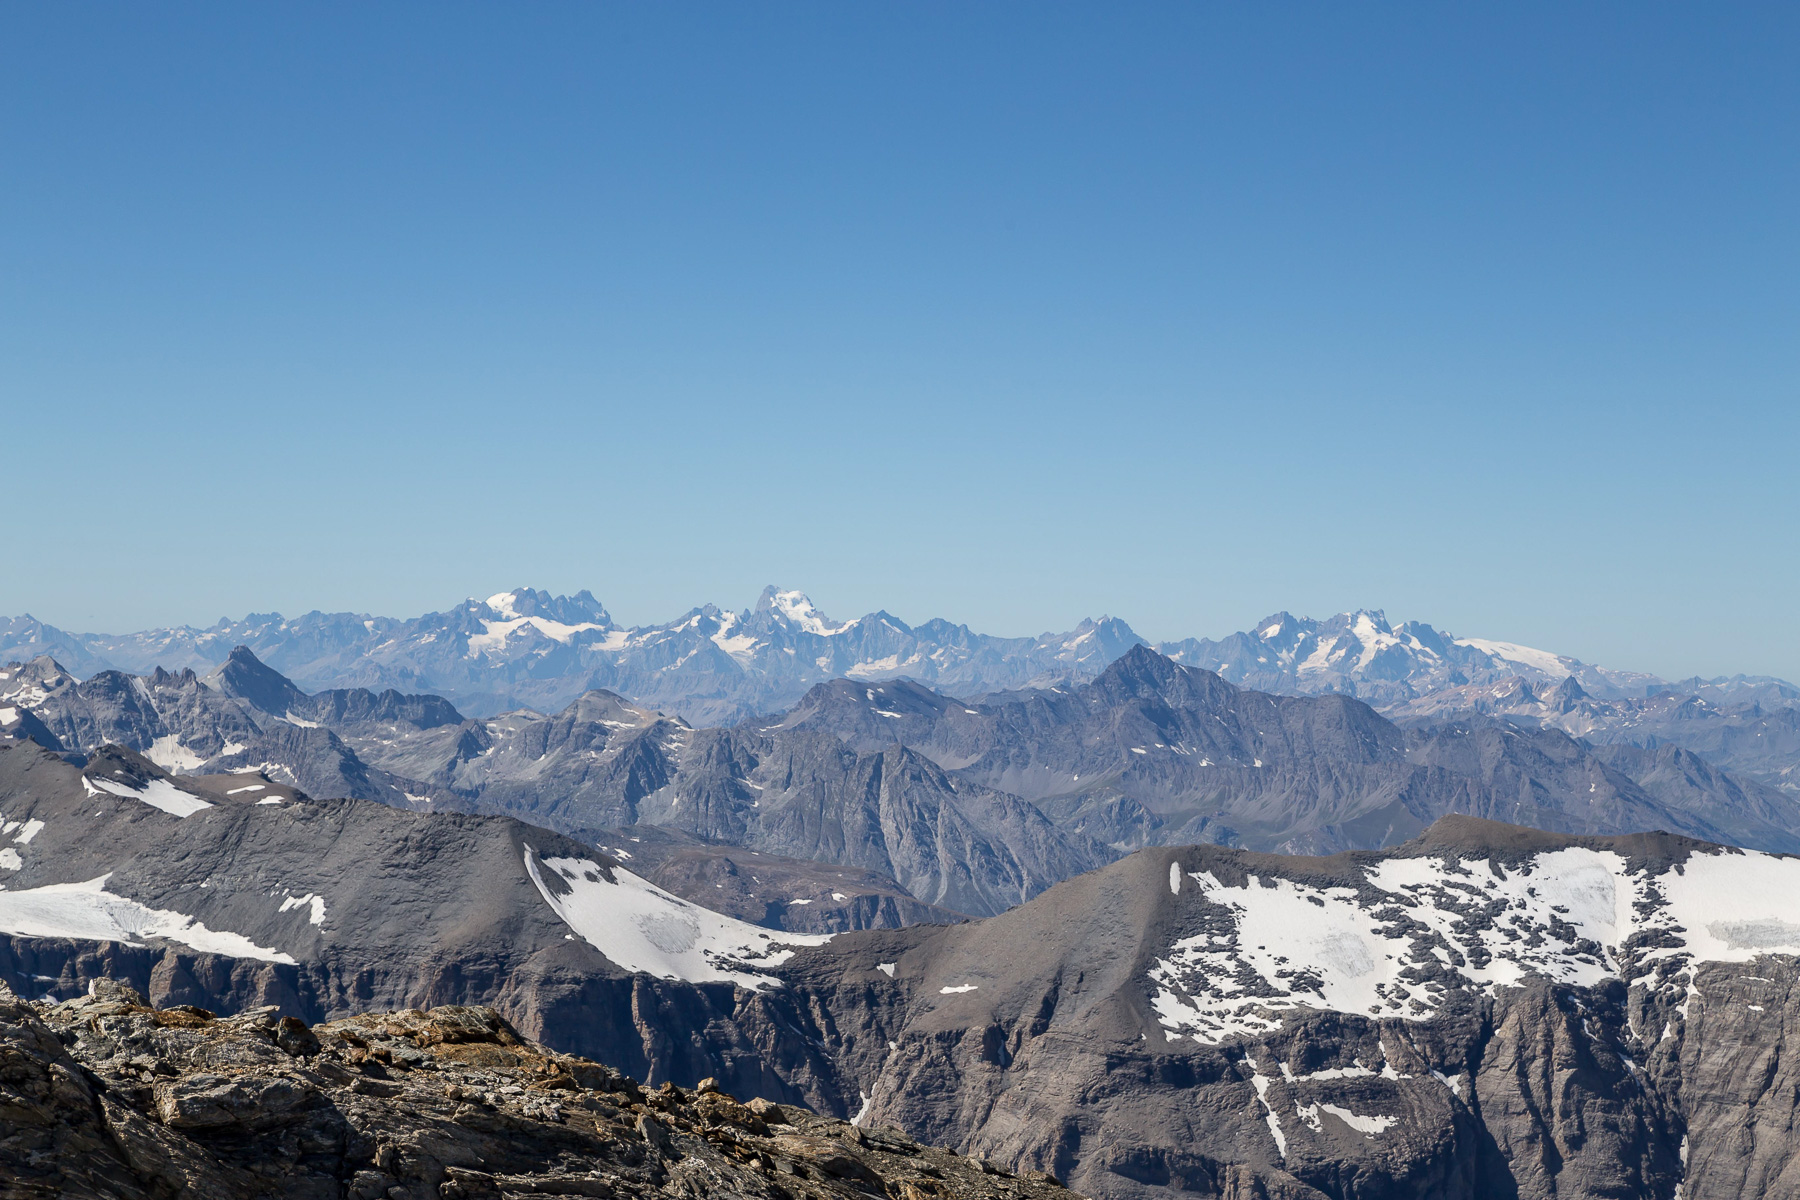 Blick in die Dauphiné: Mont Pelvoux (3.946 m), L'Ailefroide (3.927 m), Barre des Écrins (4.103 m), La Grande Ruine (3.765 m) - davor die Aiguille de Scolette (3.506 m) - und La Meije (3.982 m).